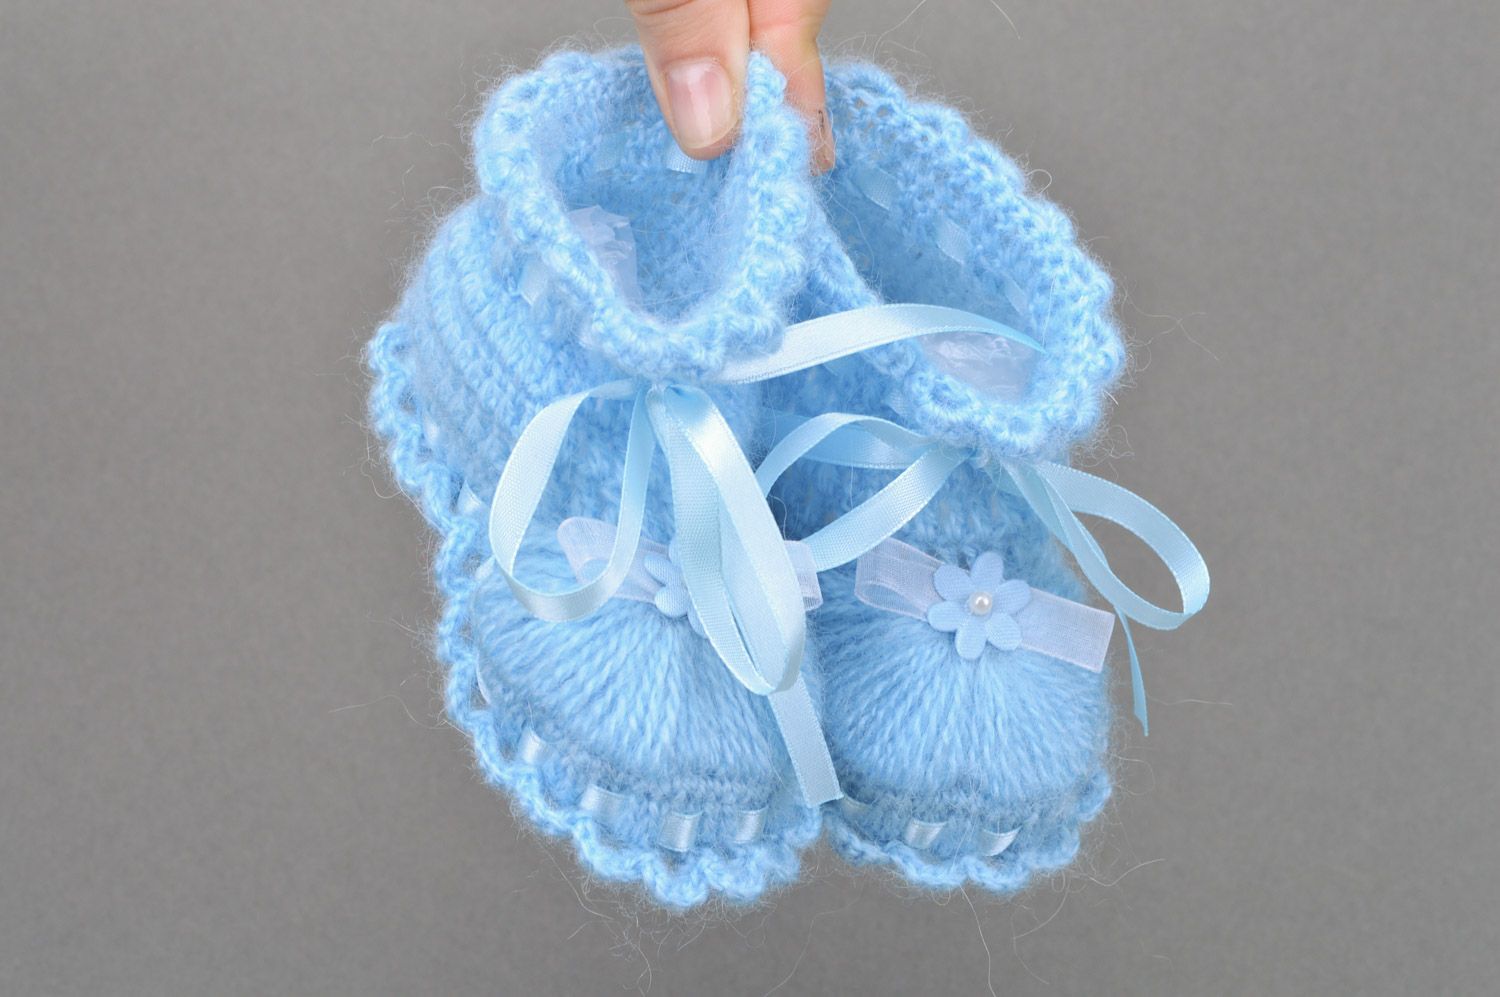 Chaussons de bébé bleu clair tricotés en acrylique faits main pour fille photo 3